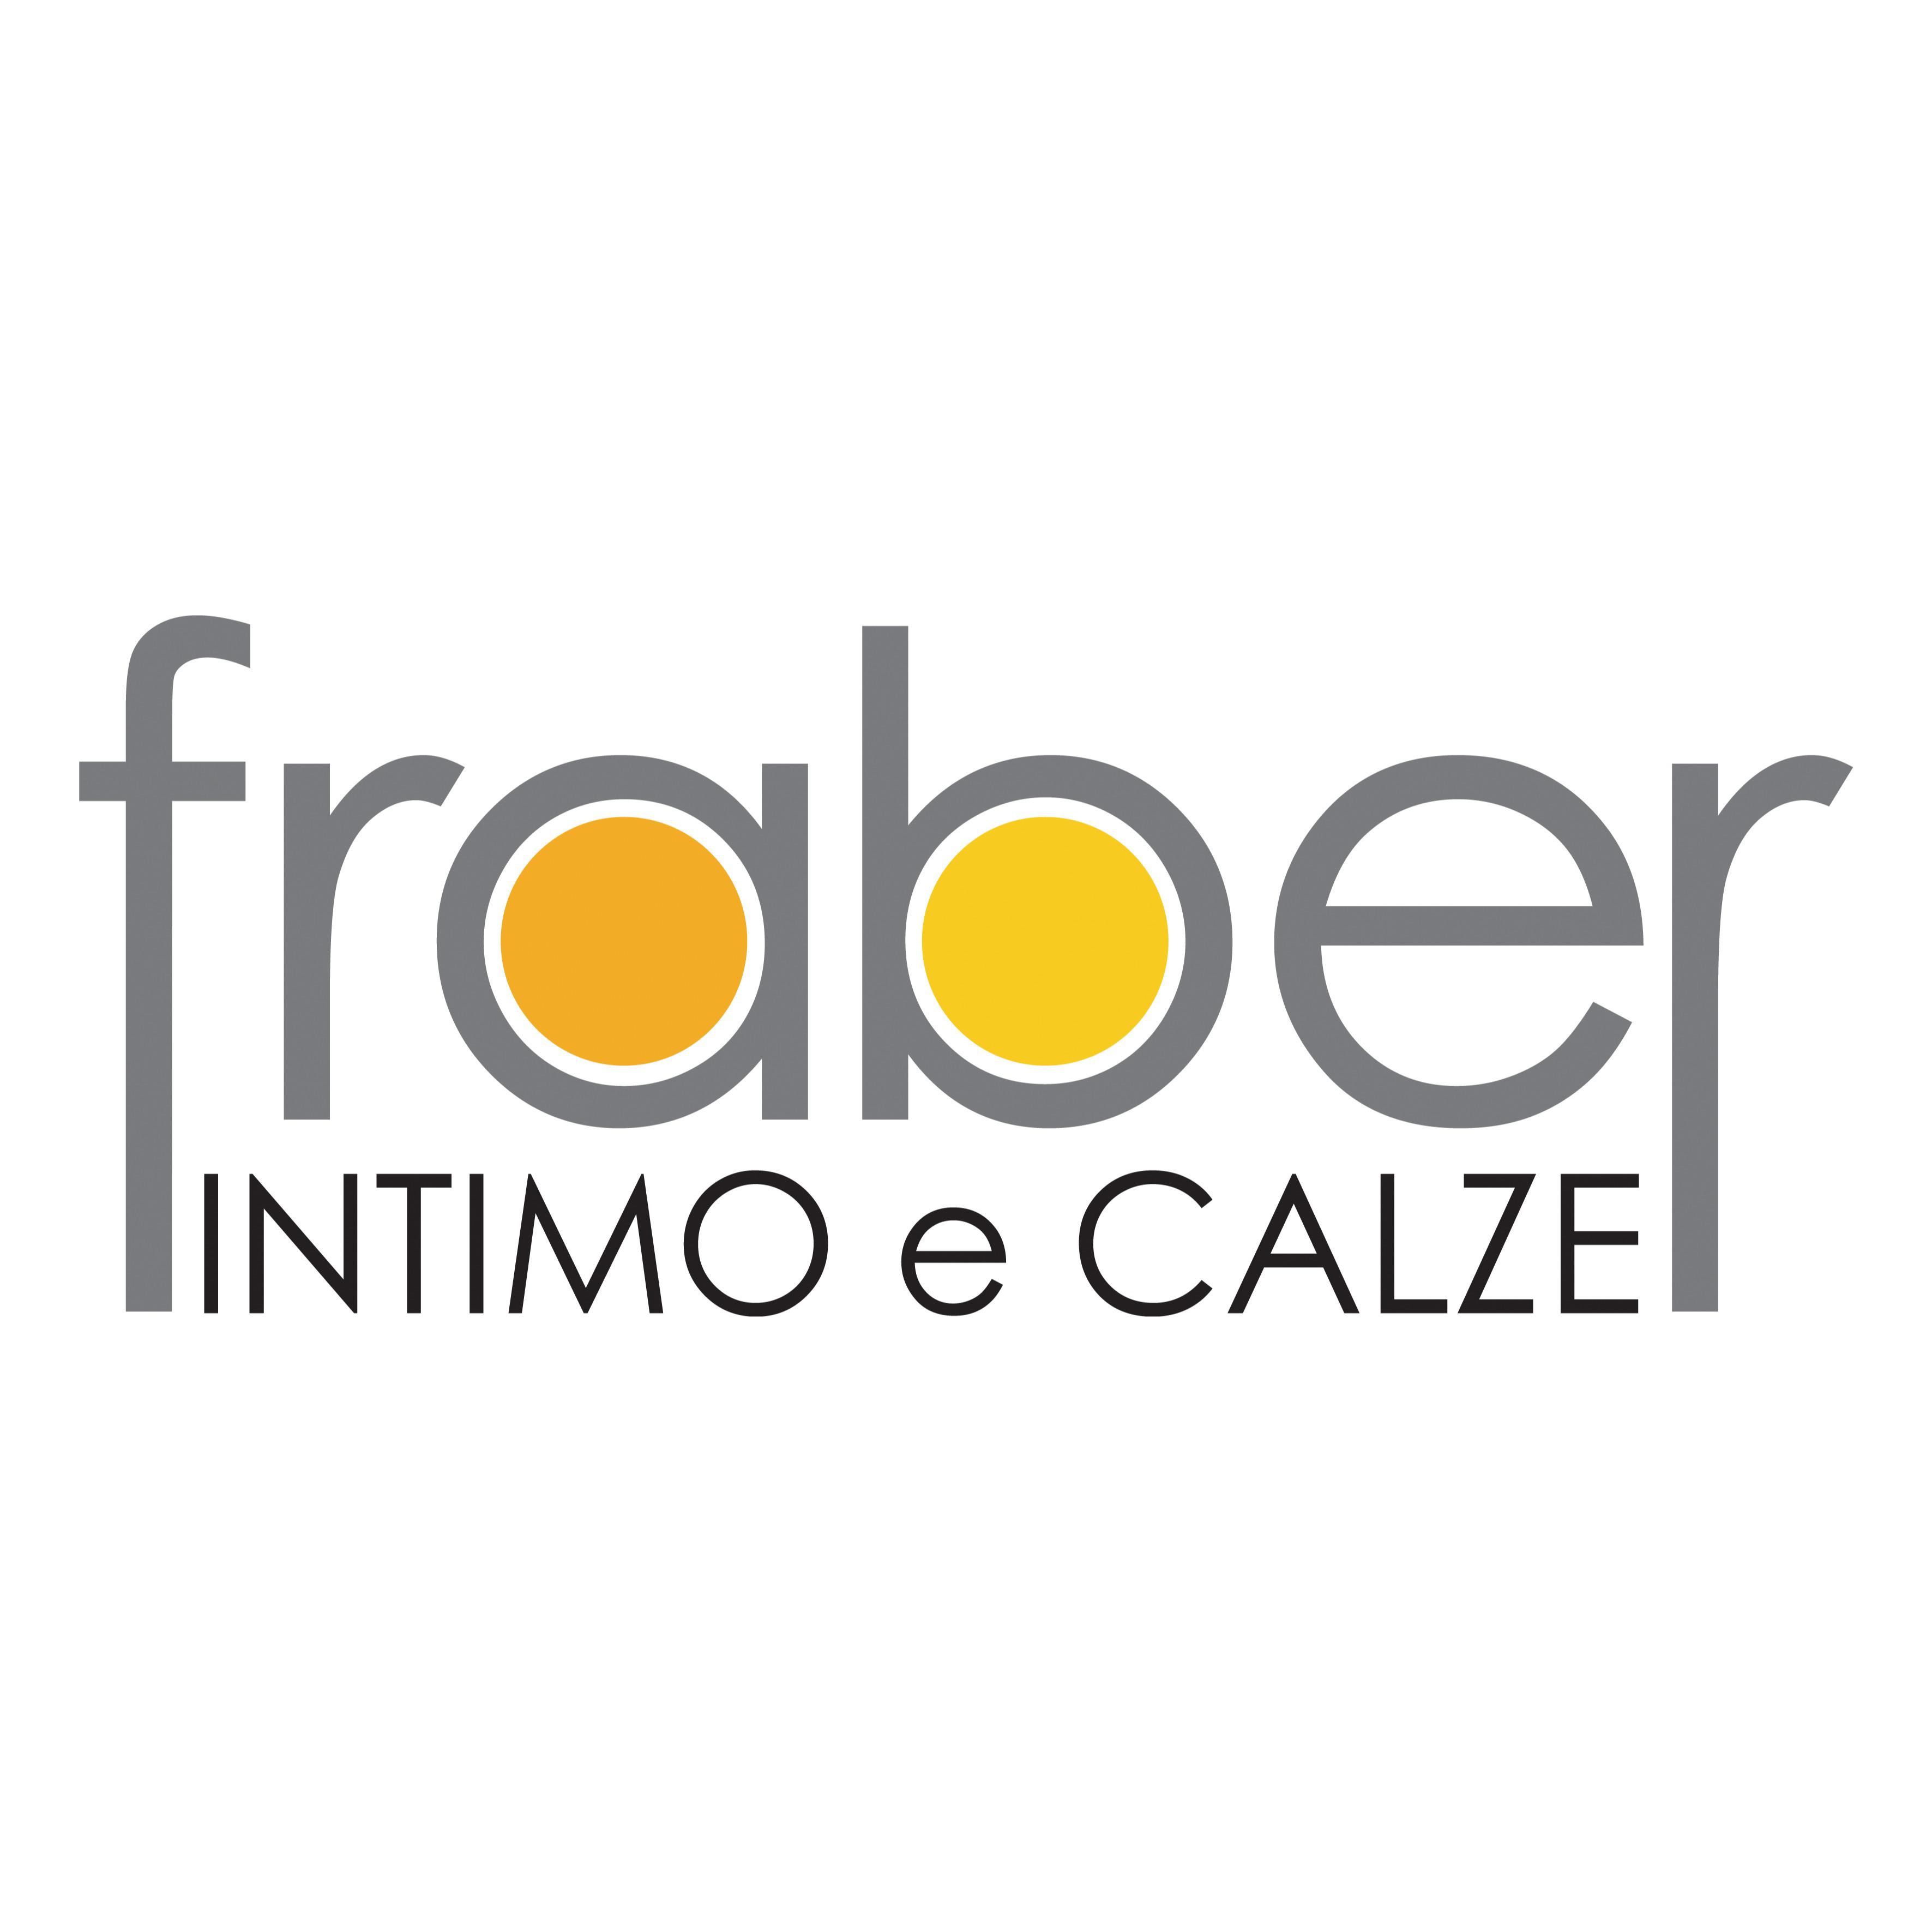 Spaccio Fraber Snc - Intimo Calze & Confezioni